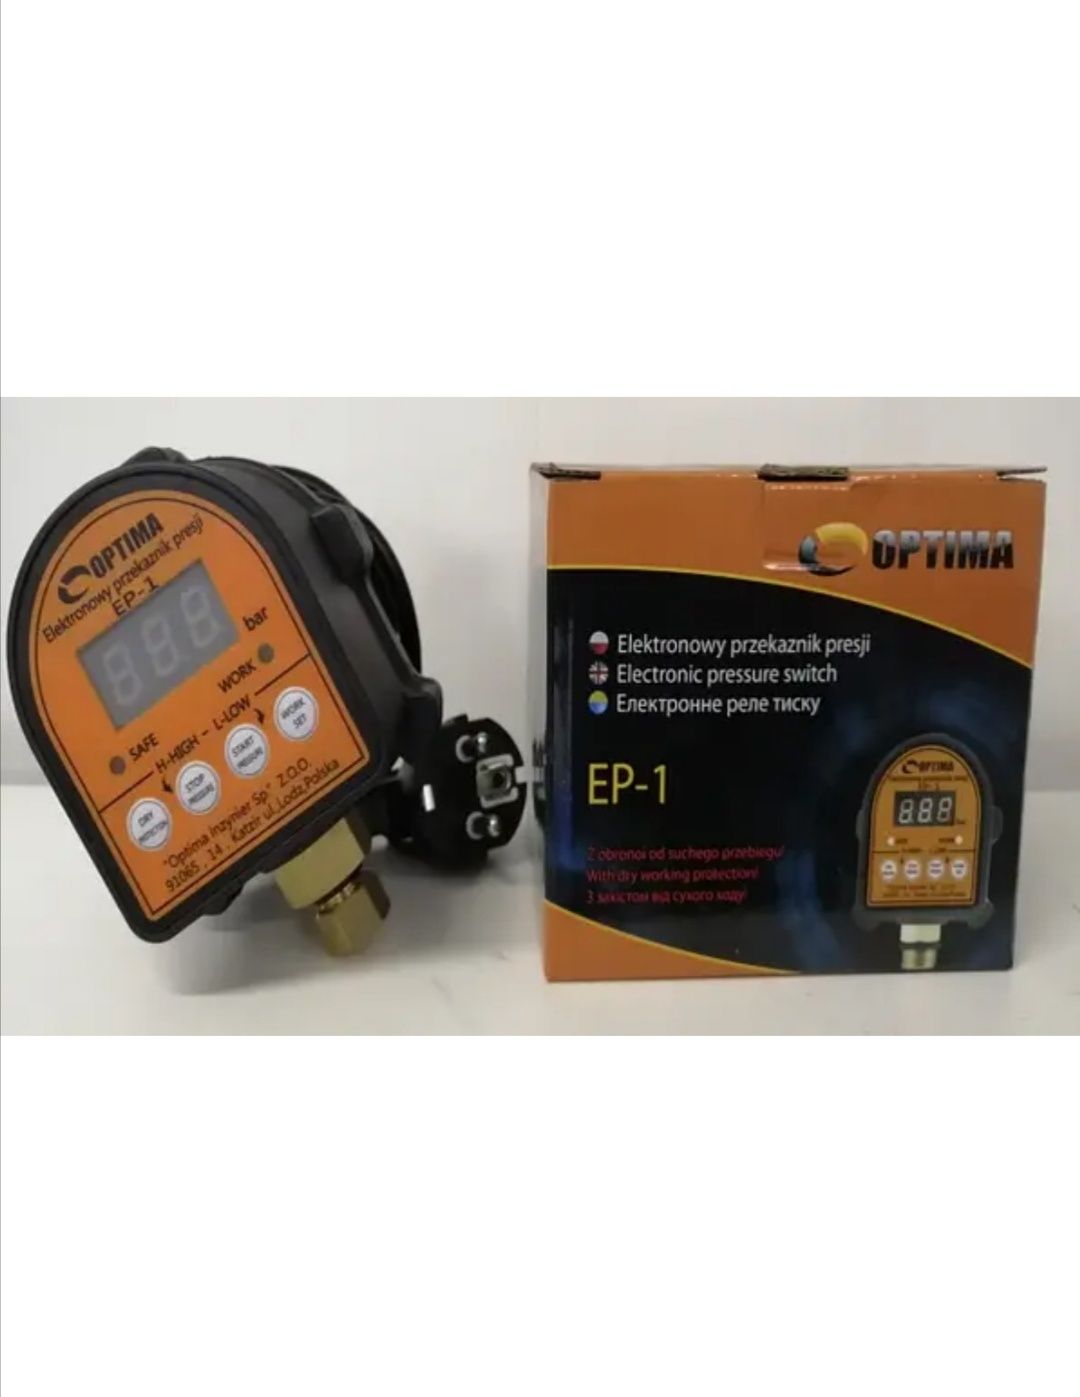 Електронне реле тиску OPTIMA EP-1 (захист від сухого ходу)